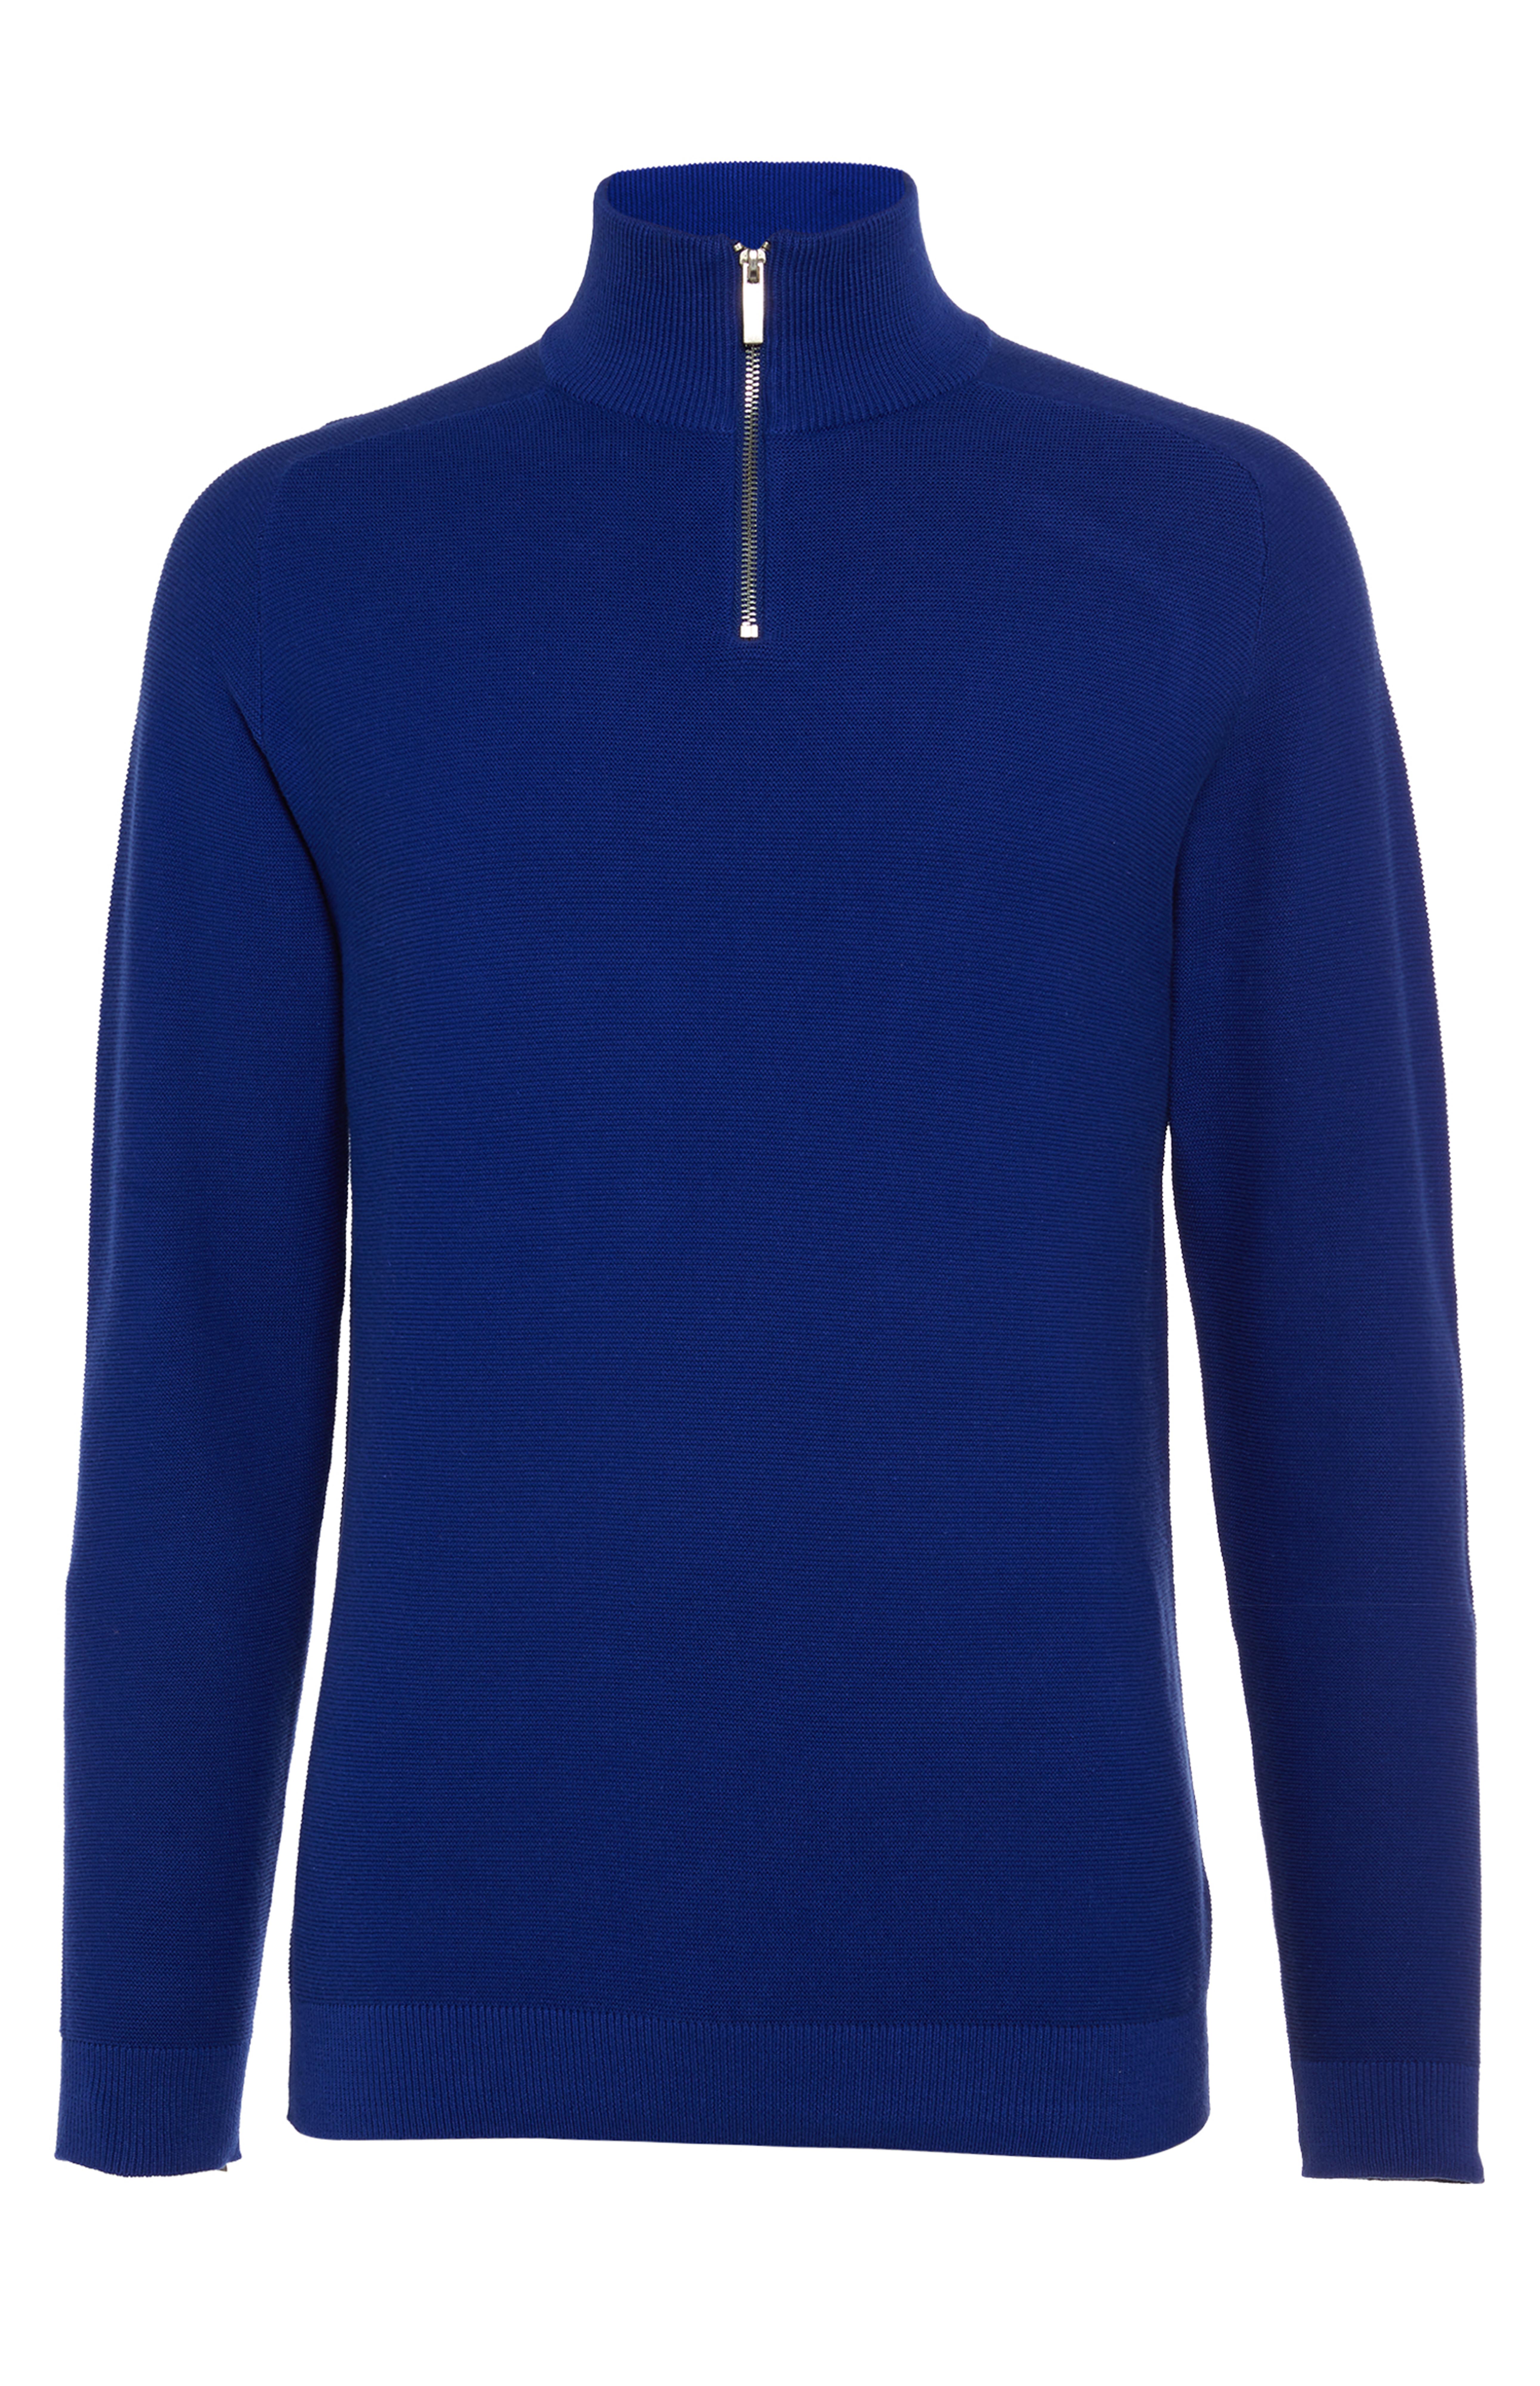 Cobalt Blue Half Zip Sweatshirt | Men's Jumpers & Sweaters | Men's ...